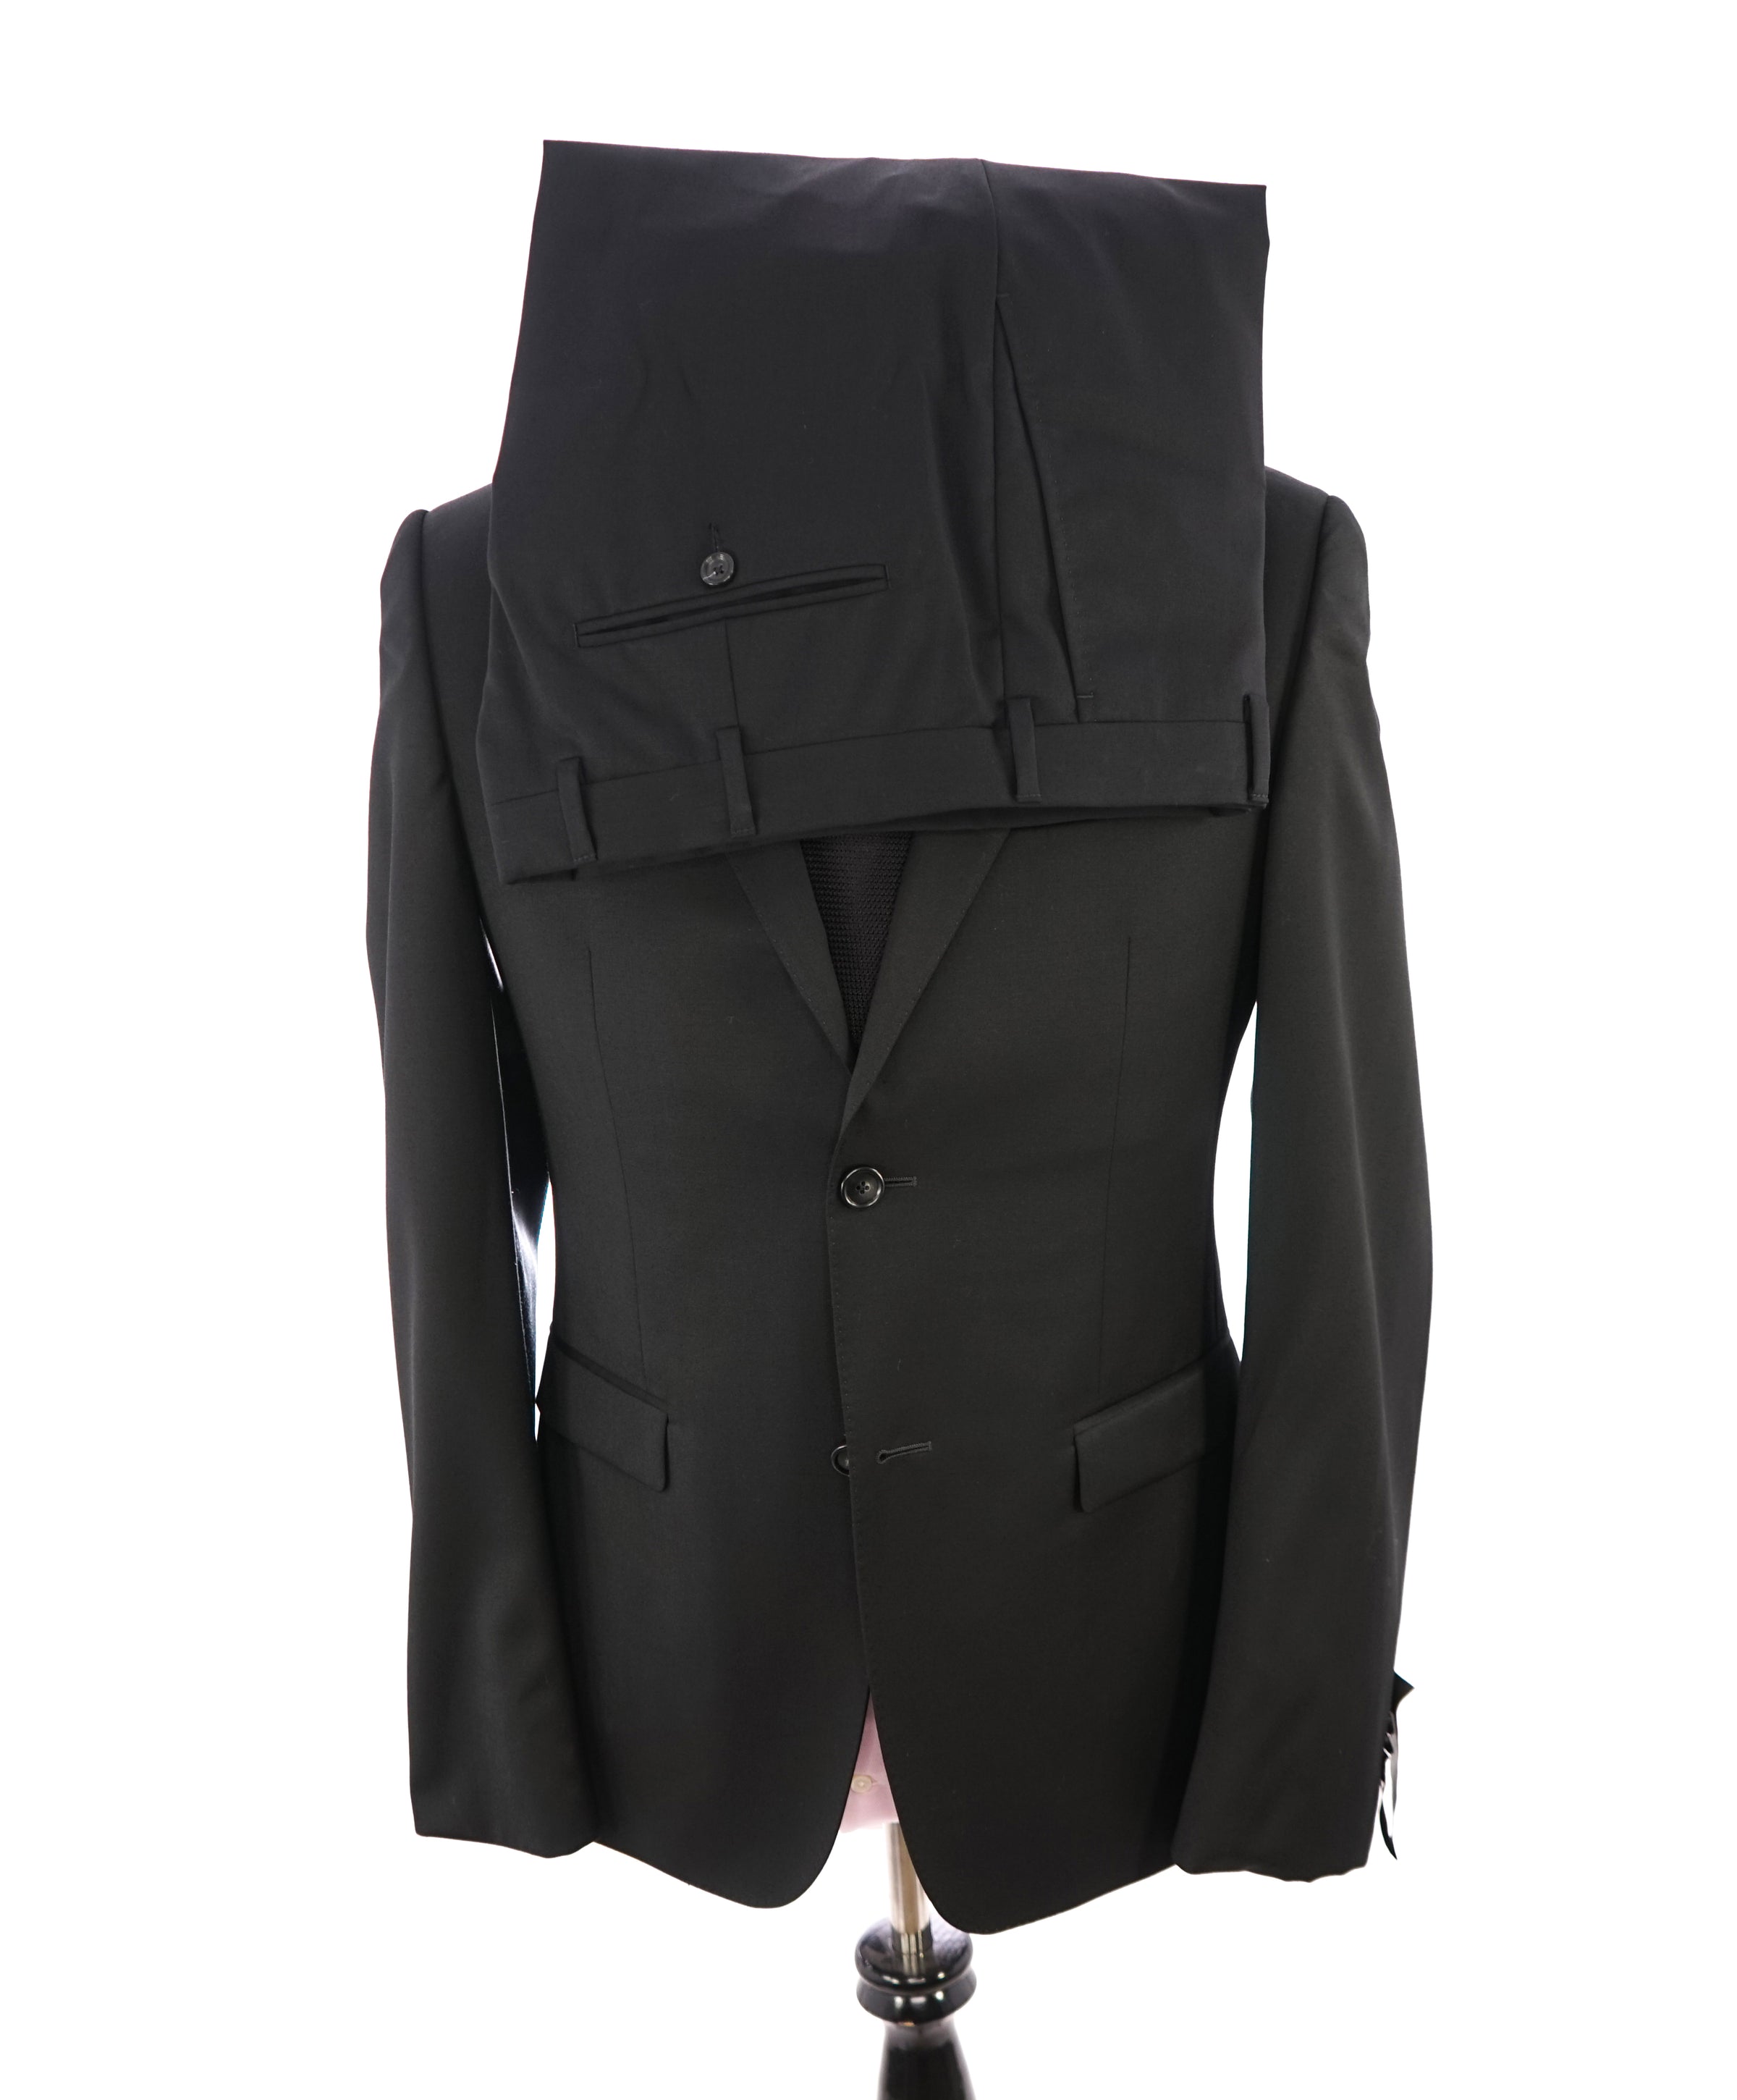 Z Zegna 16 No-Slip Plastic Suit Jacket Coat Hangers 3-Pack Black Assorted